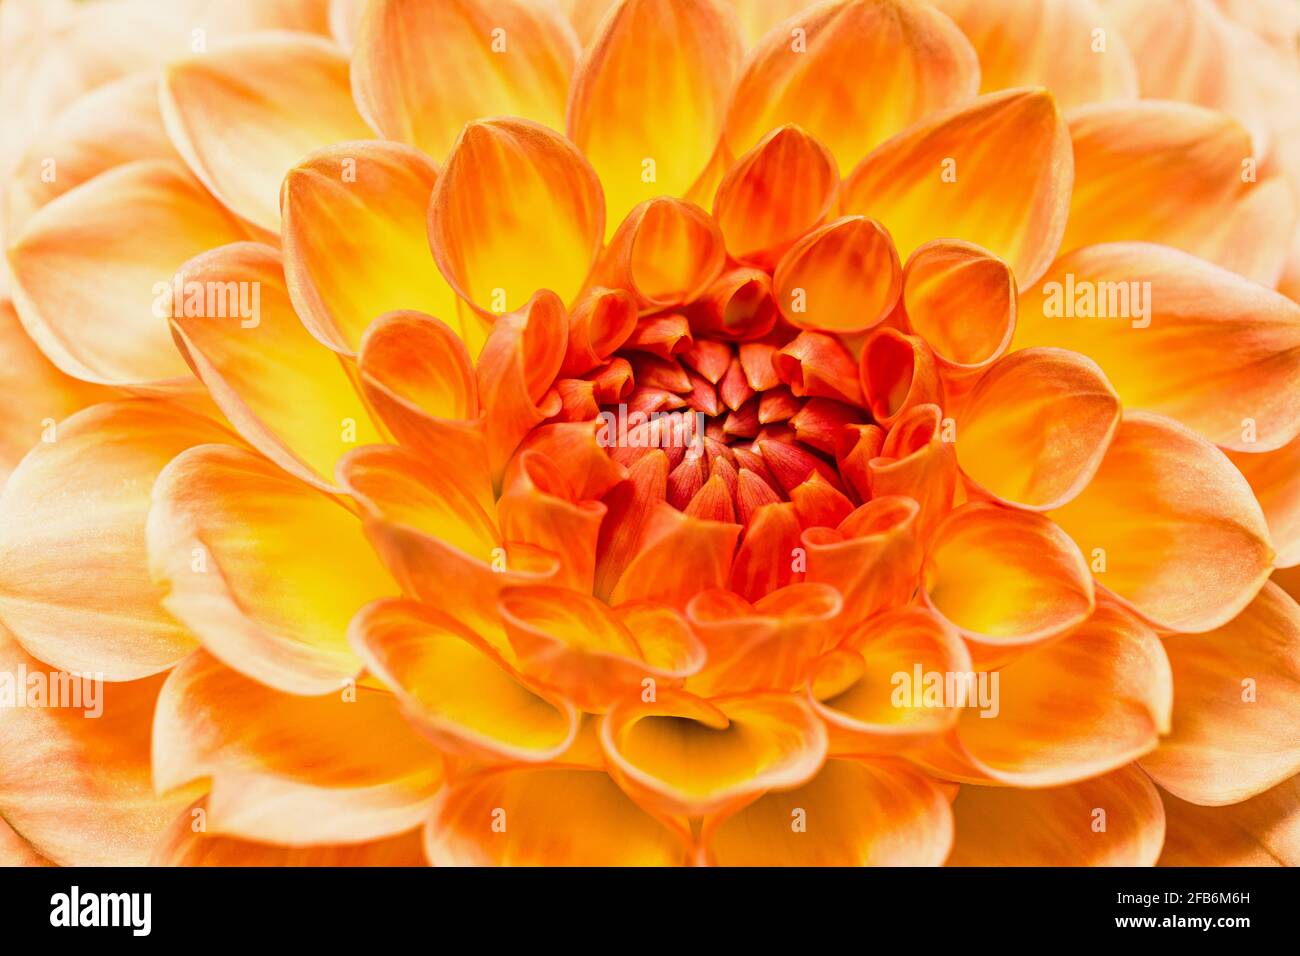 Dahlia, primo piano di fiori di colore arancio che mostrano il motivo dei petali. Foto Stock